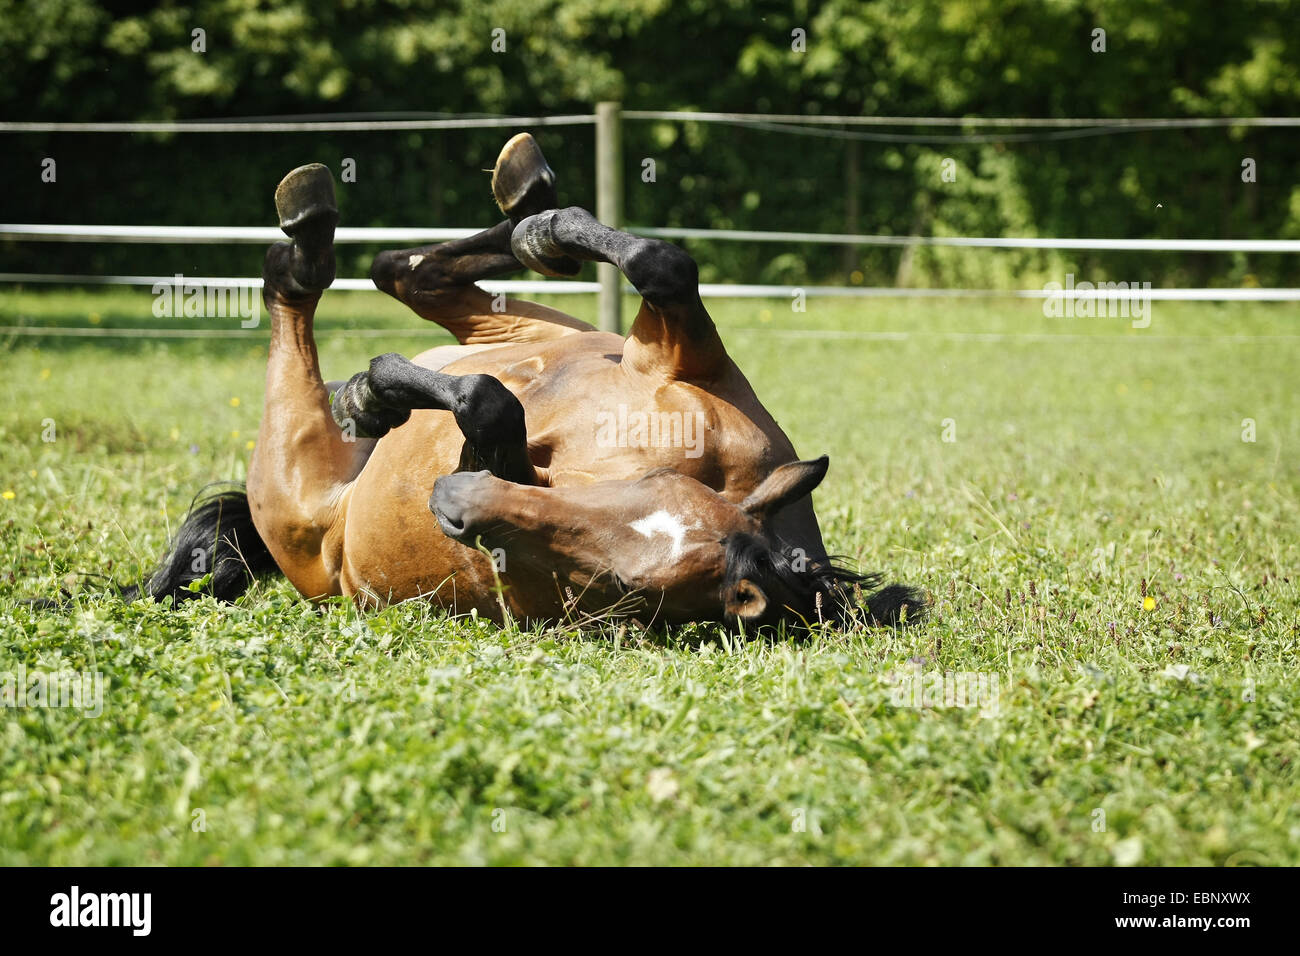 Chevaux hanovriens, warmblood allemand (Equus przewalskii f. caballus), cheval brun roulant sur les pâturages, l'Allemagne, Bade-Wurtemberg Banque D'Images